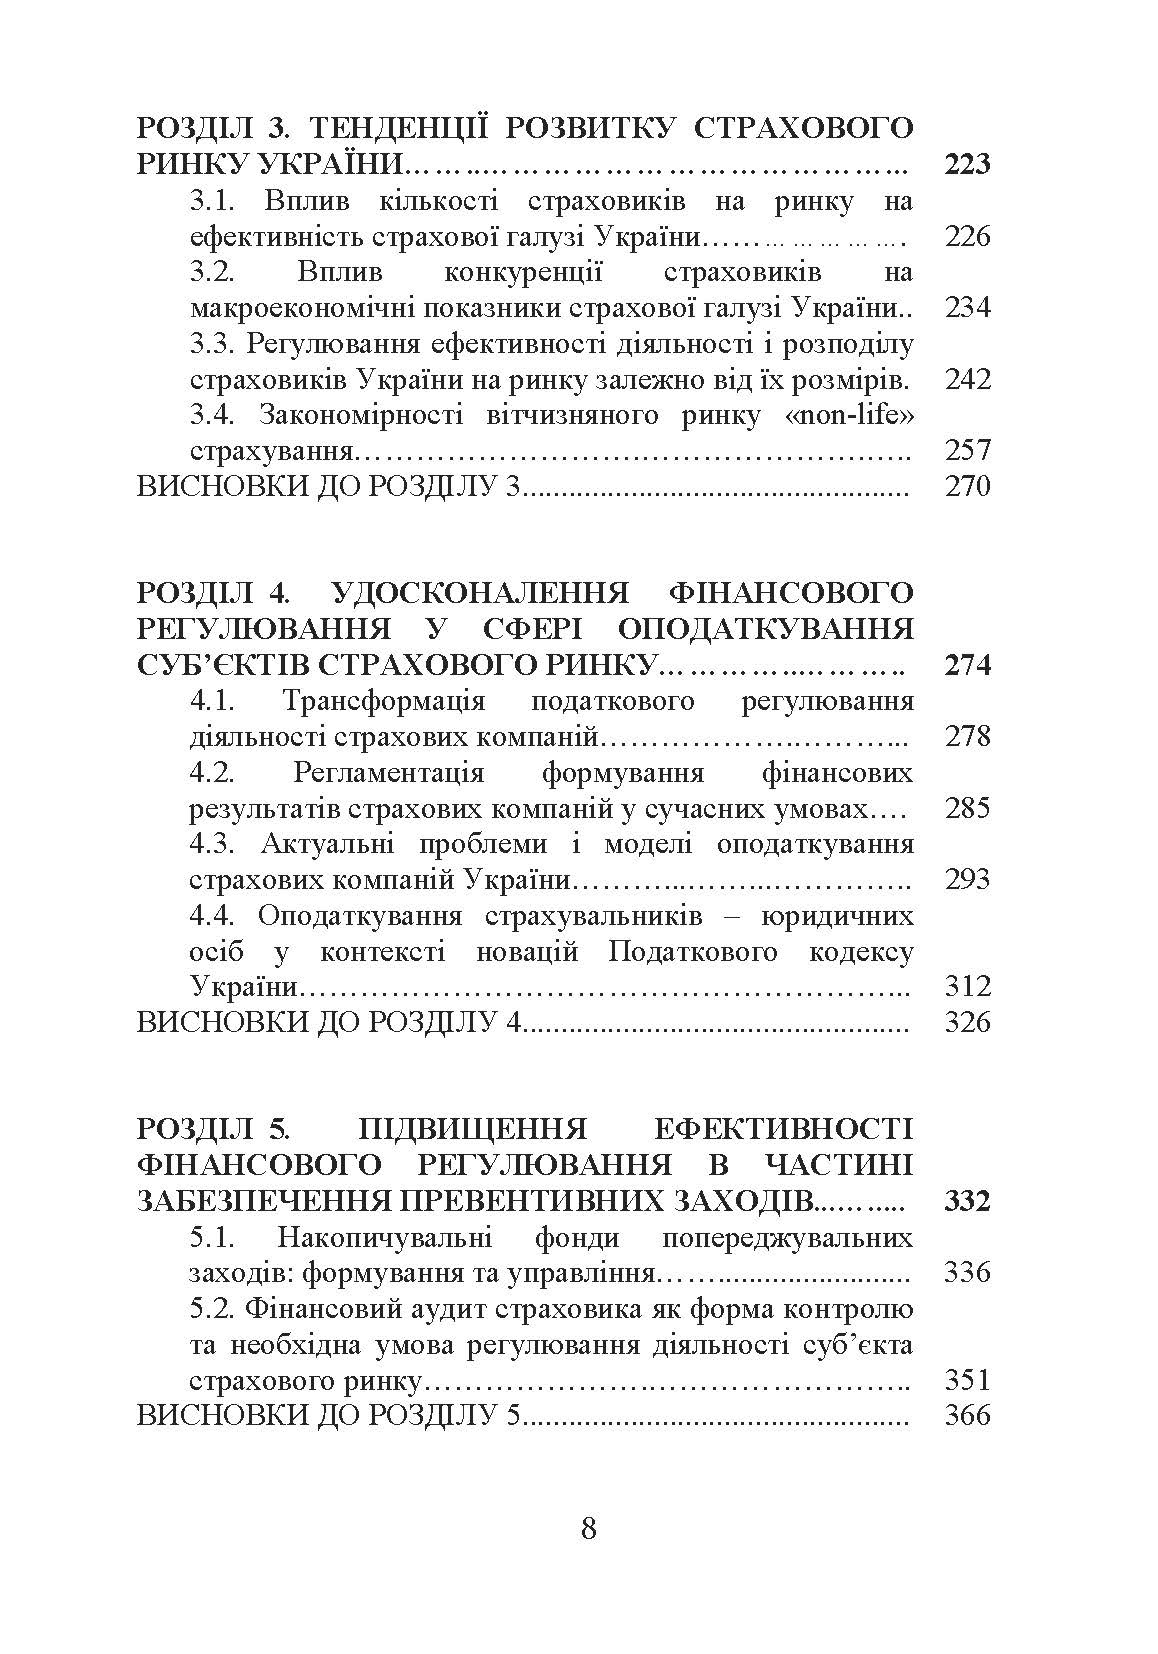 Фінансове регулювання страхового ринку України (2019 год)). Автор — Лада Шірінян. 